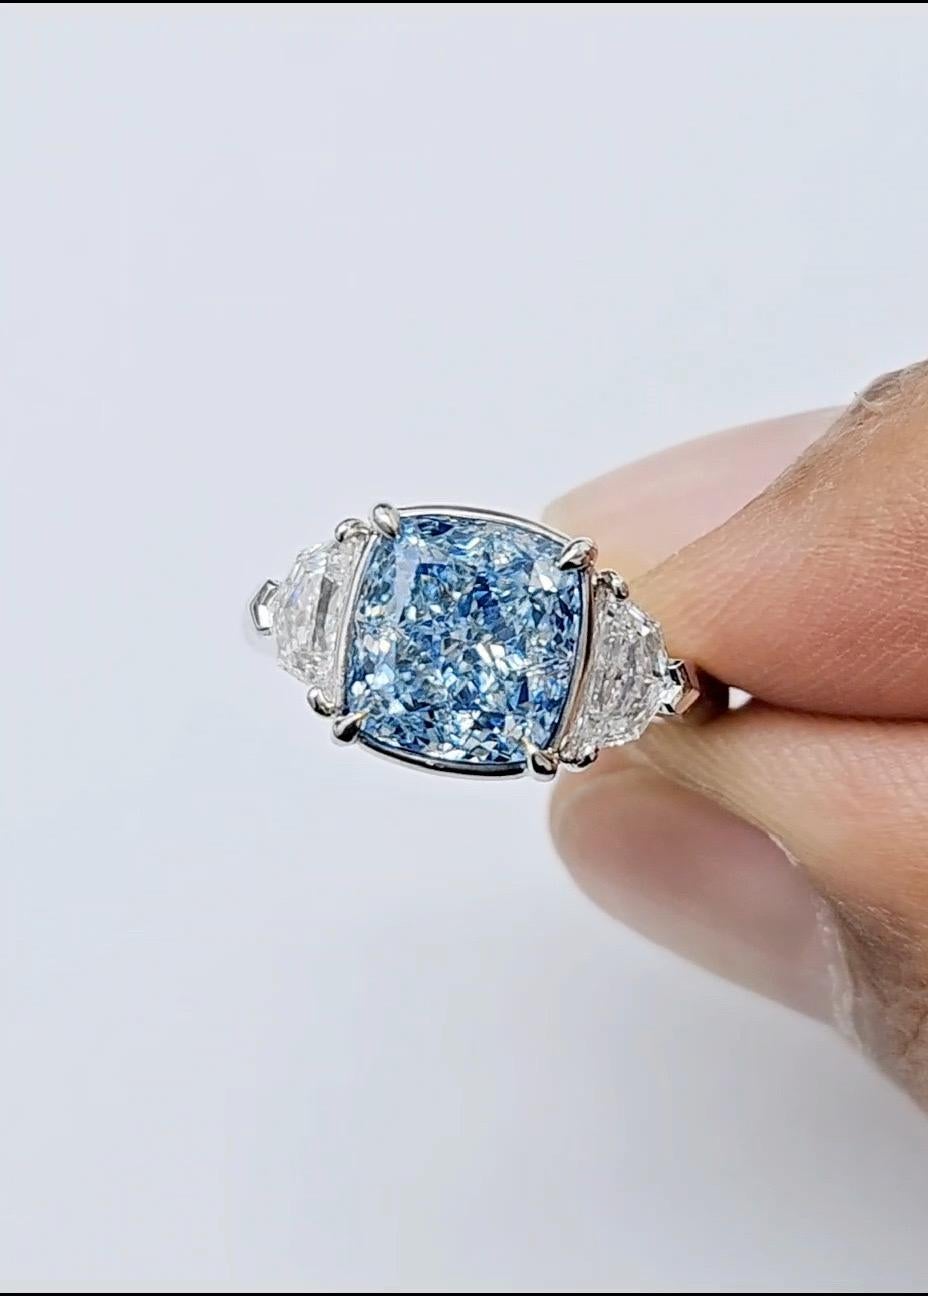 Emilio Jewelry, un grossiste/détaillant bien connu et respecté situé sur l'emblématique Cinquième Avenue de New York, 
Avec un diamant central très spécial certifié GIA comme étant de couleur naturelle bleu fantaisie de 4,00 carats. 
Veuillez vous